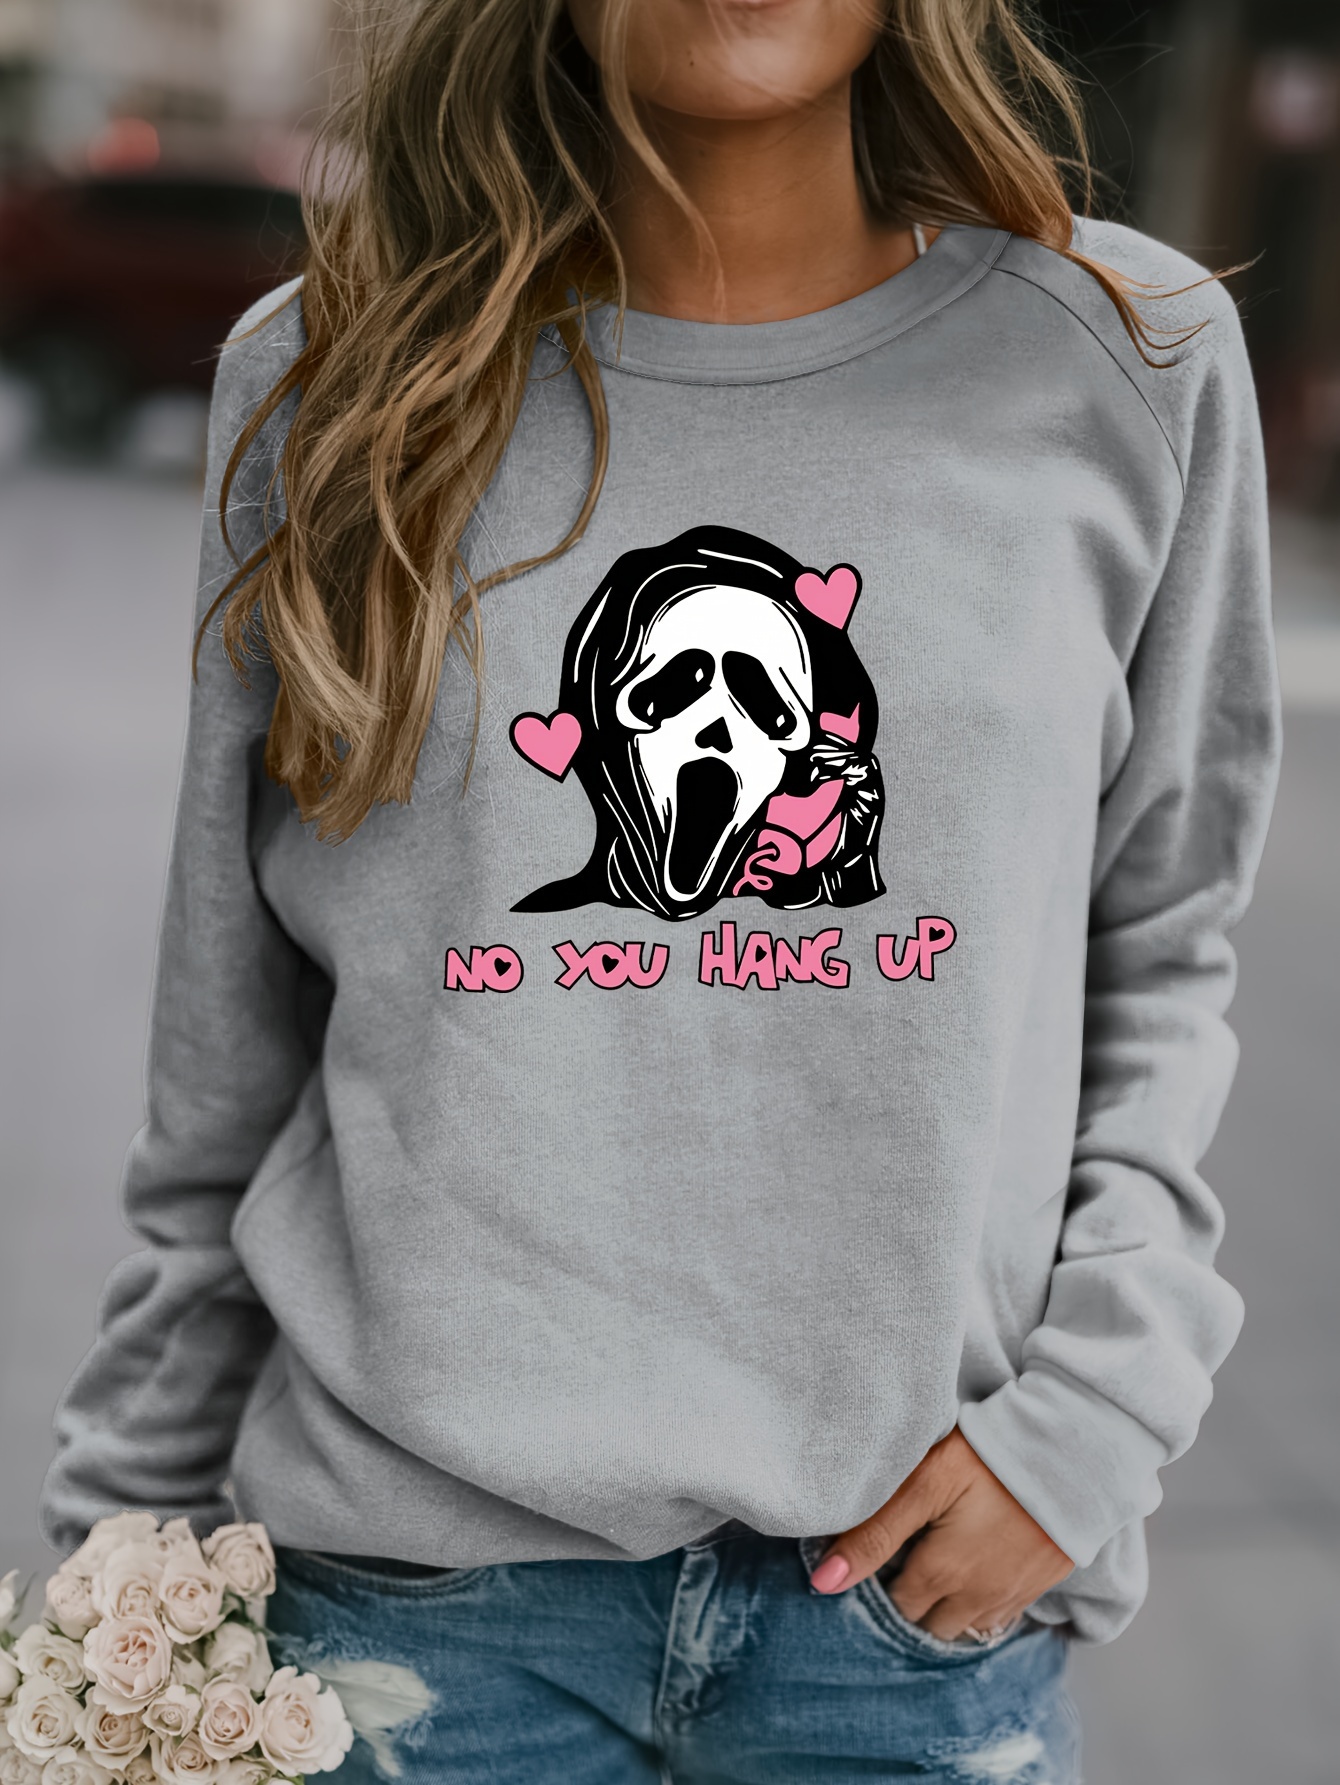 Halloween Ghost Print Pullover Sweatshirt Cute Long Sleeve - Temu